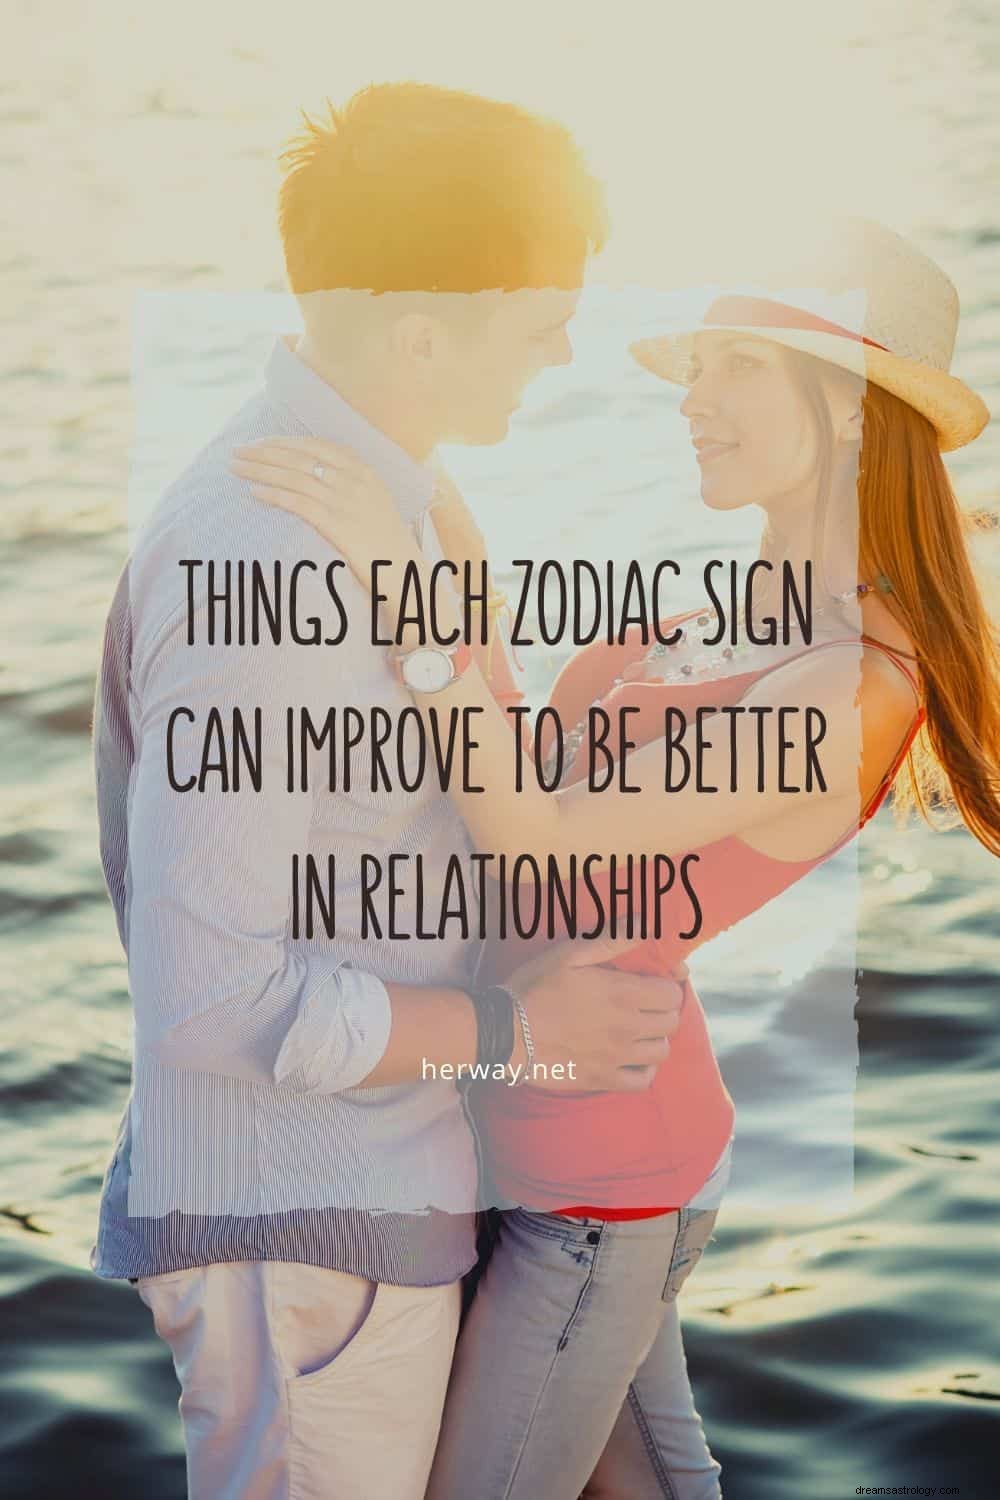 Cose che ogni segno zodiacale può migliorare per essere migliori nelle relazioni